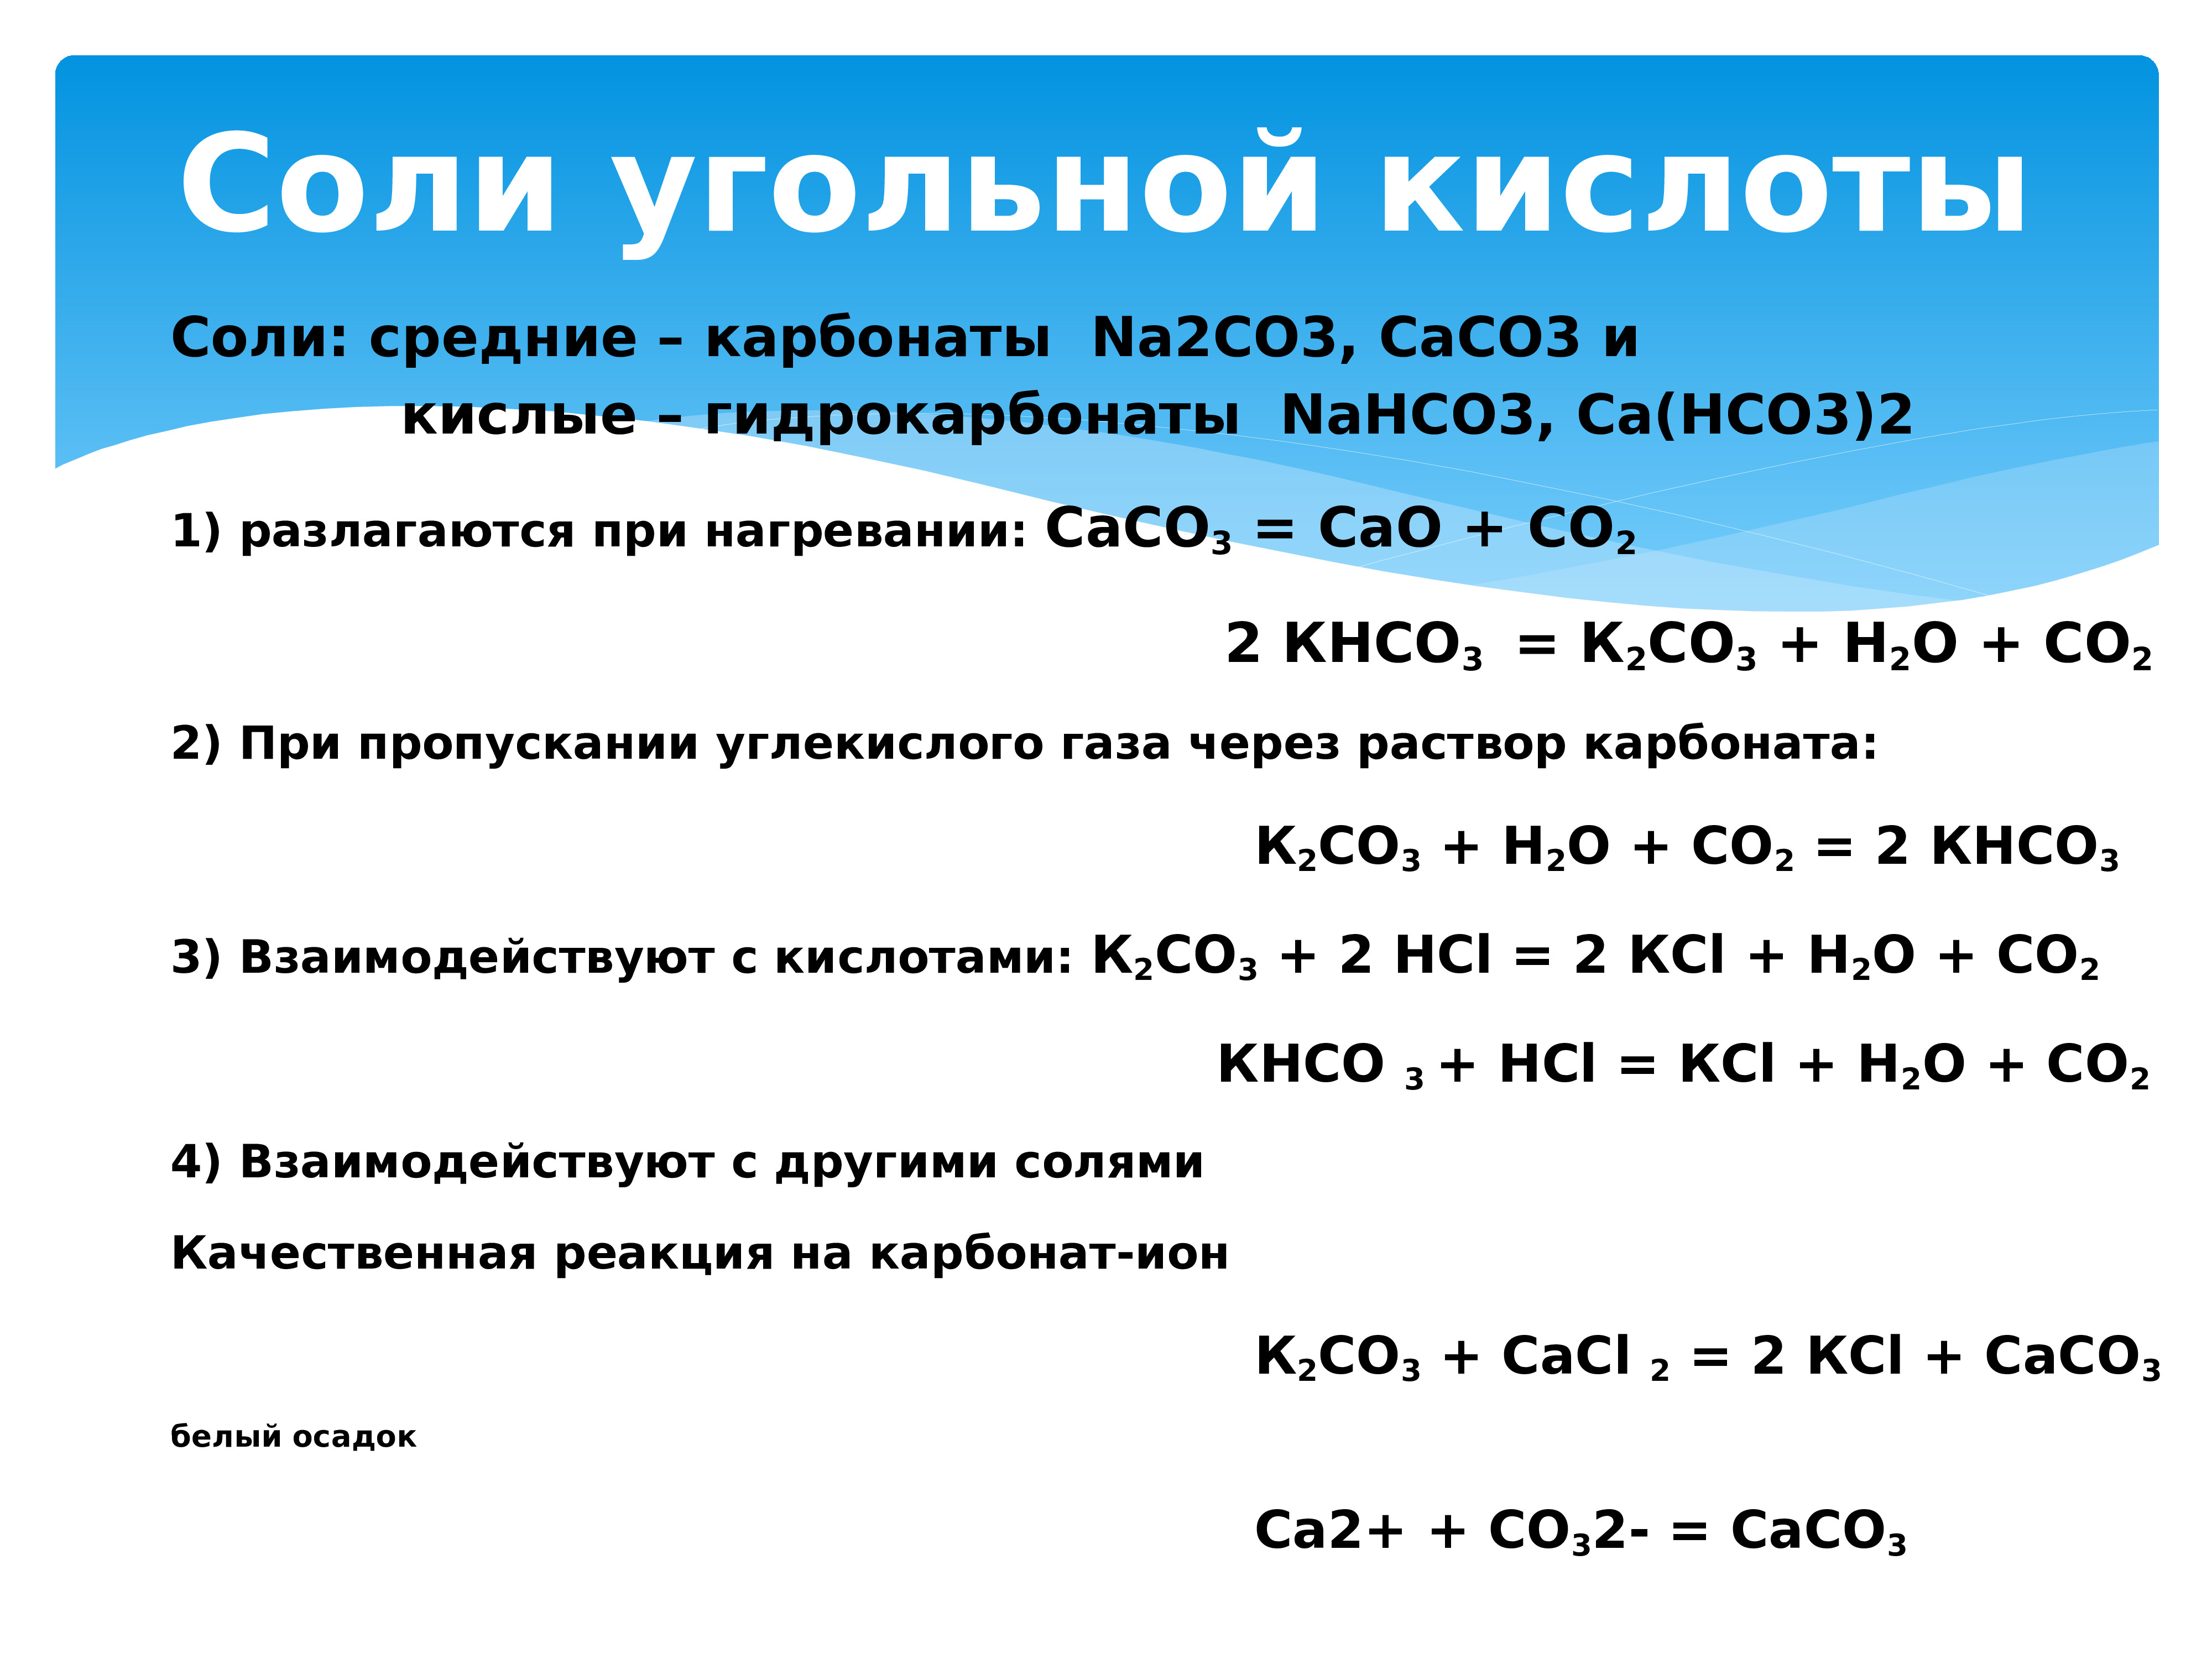 Углекислый газ оксид калия карбонат калия. Соли угольной кислоты карбонаты и гидрокарбонаты. Разложение карбонатов и гидрокарбонатов при нагревании. Реакции с углекислым газом. Соли угольной кислоты.